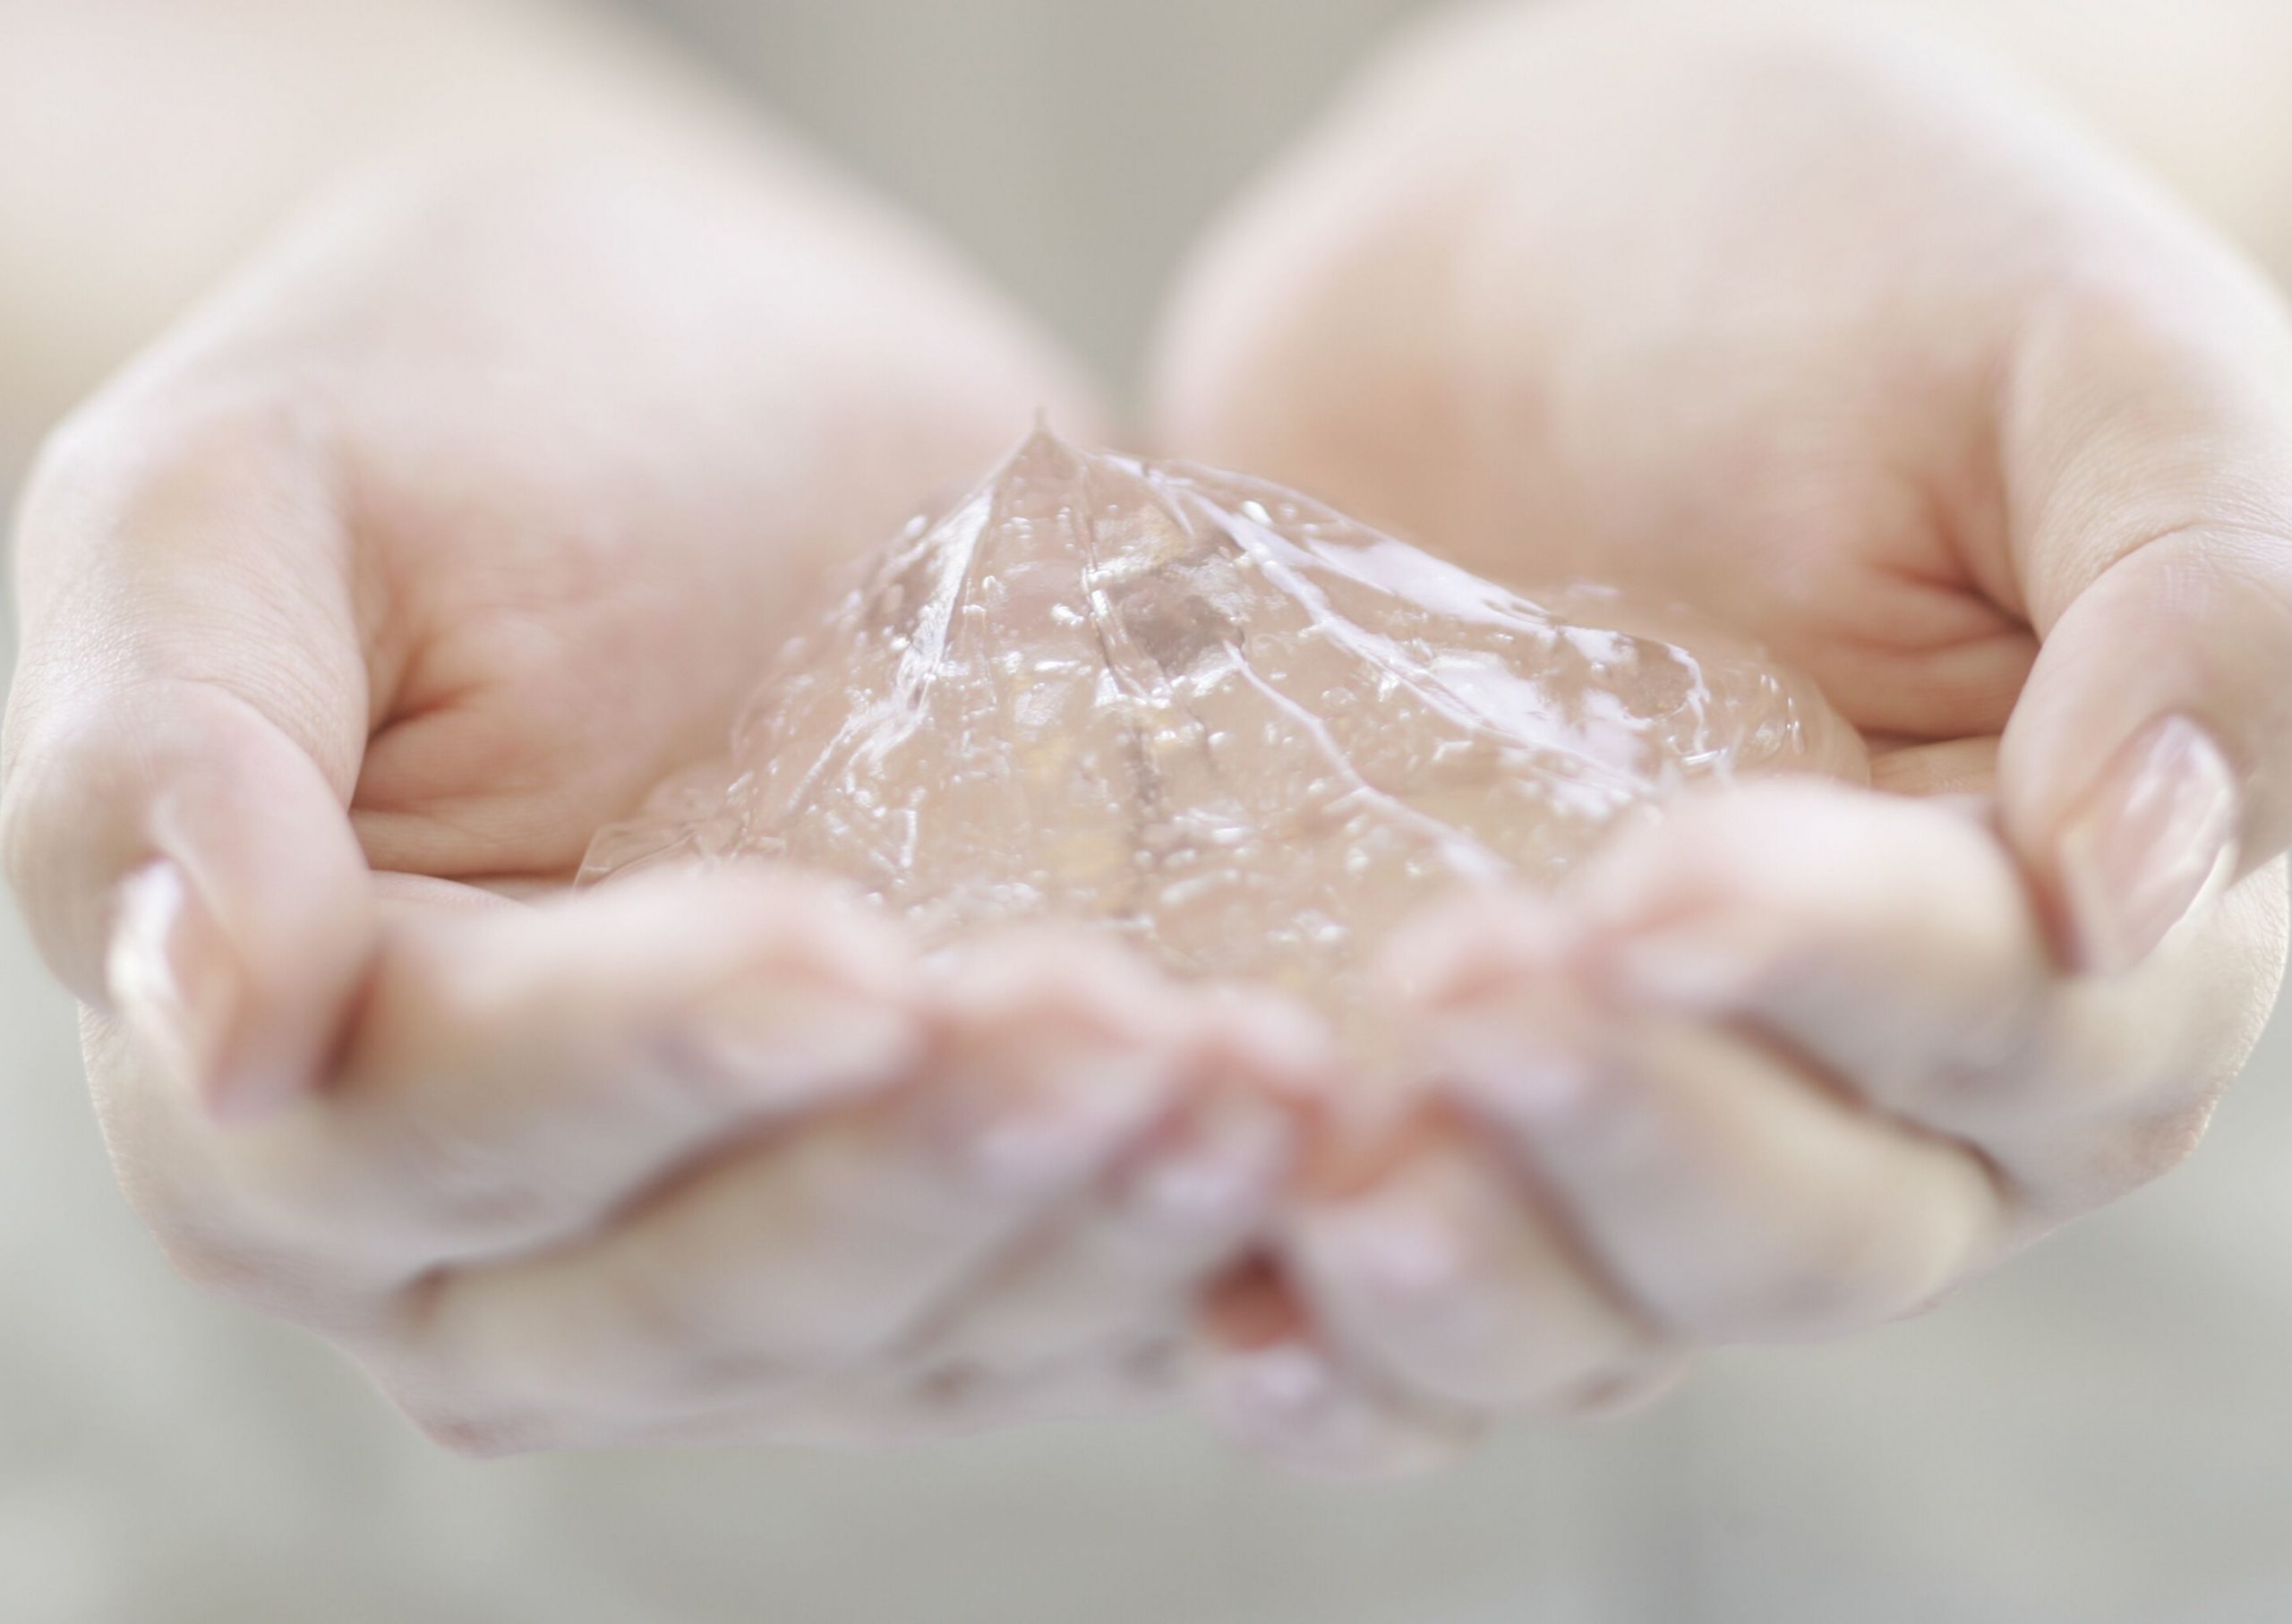 Fem gel desinfectant de mans